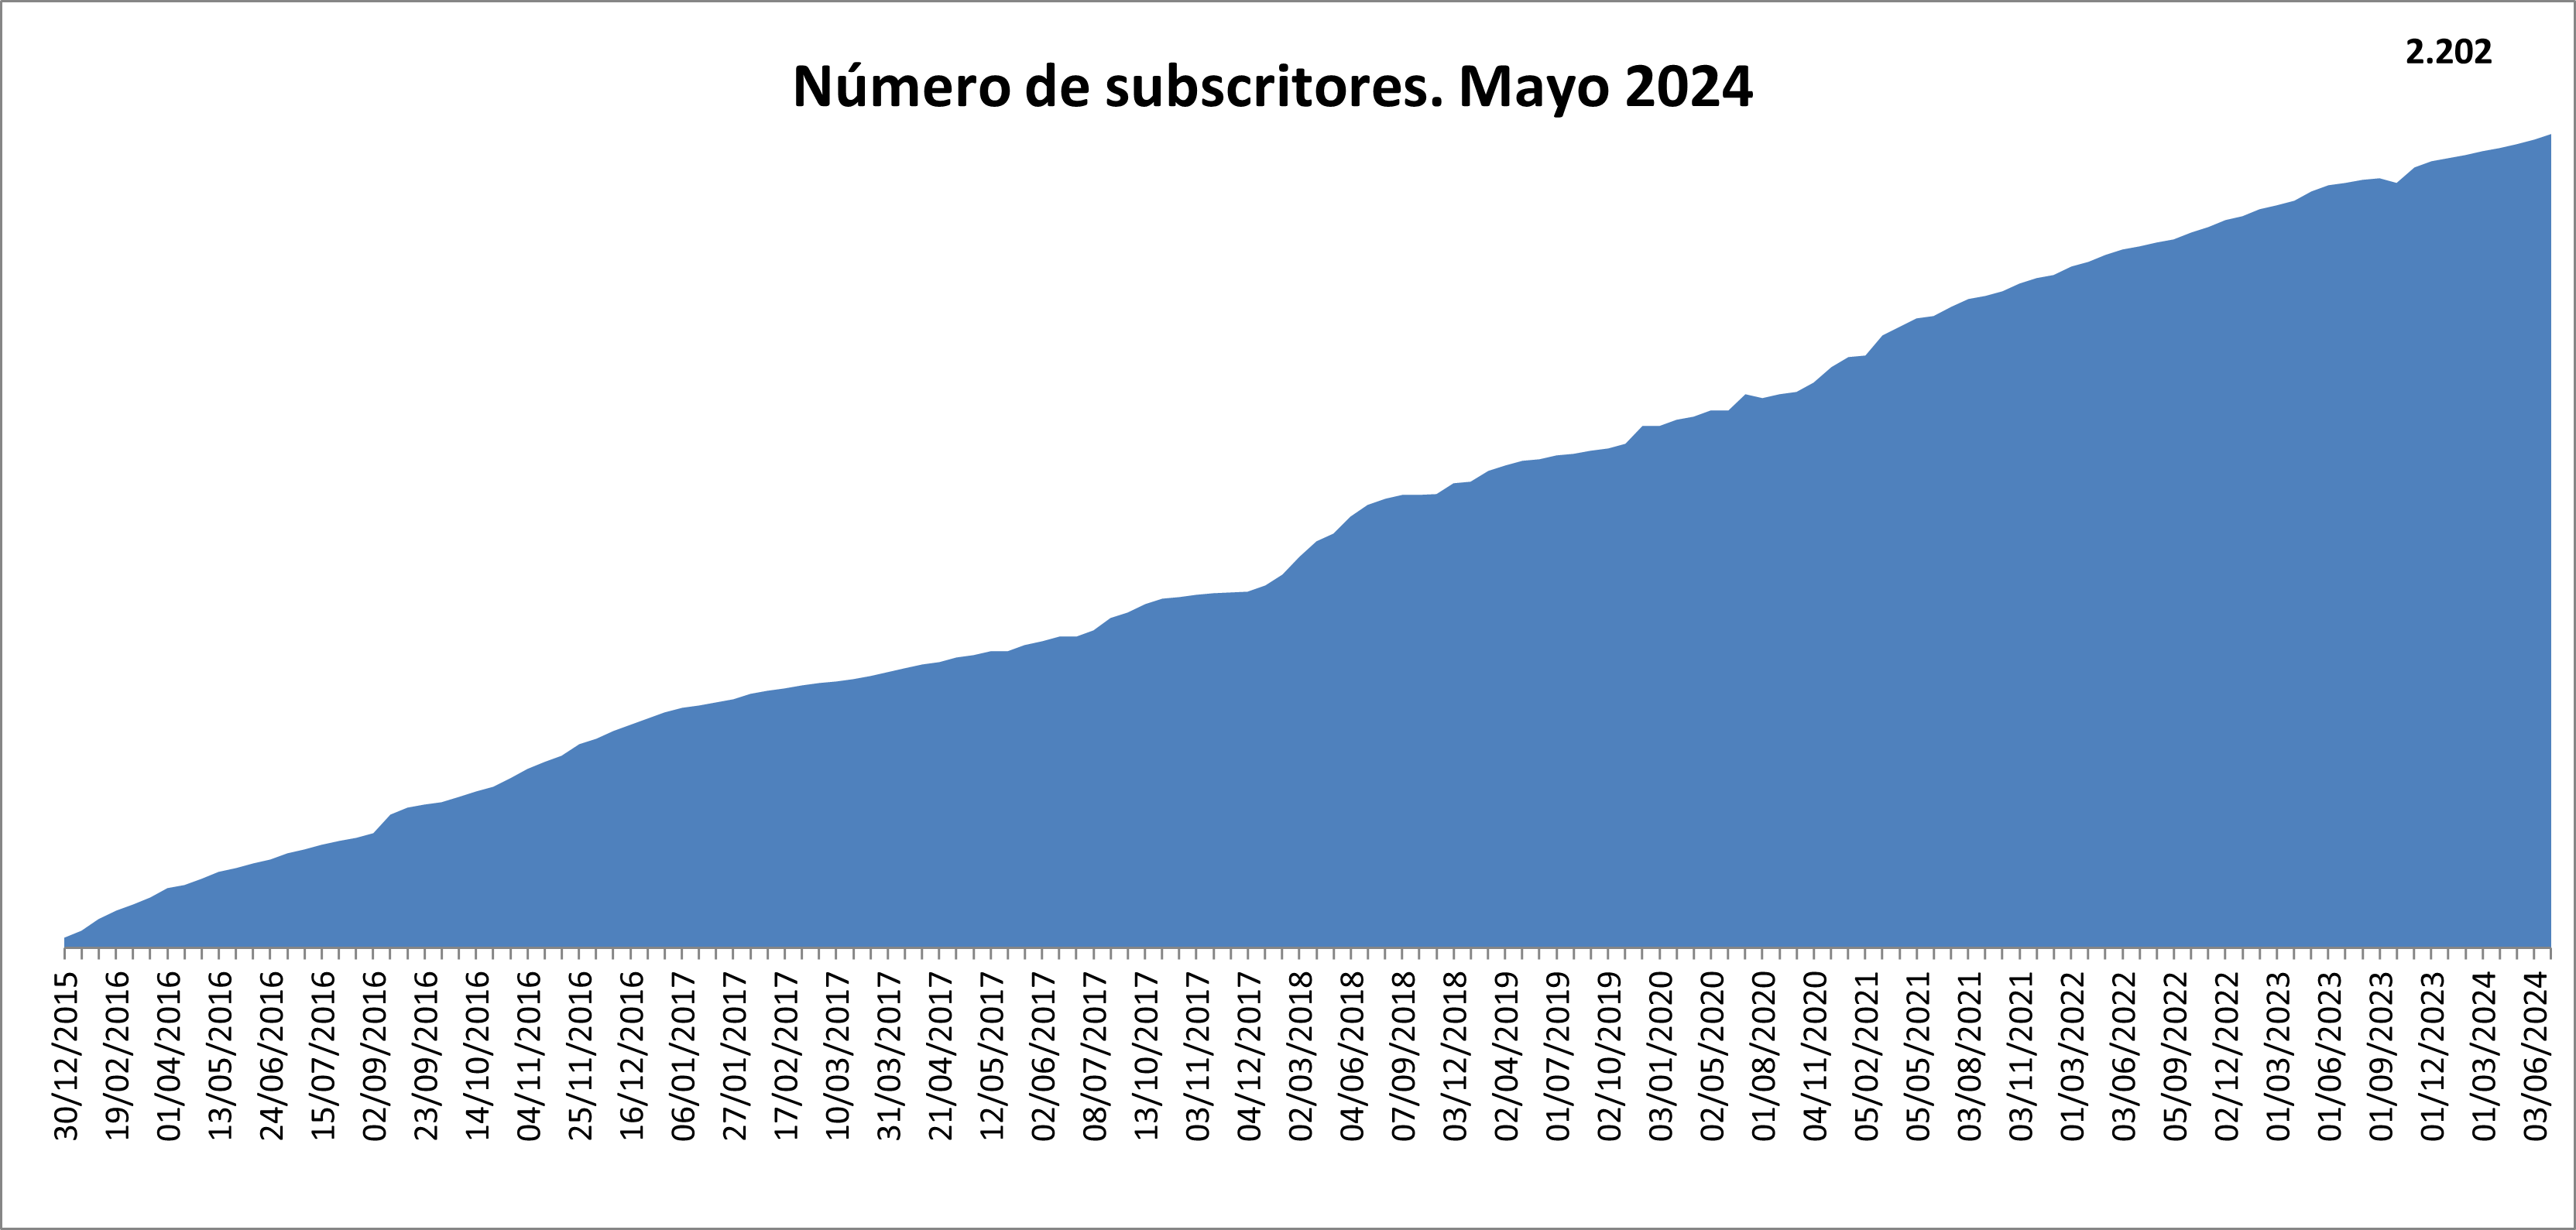  Gráfico do número de subscritores aos informes de interese